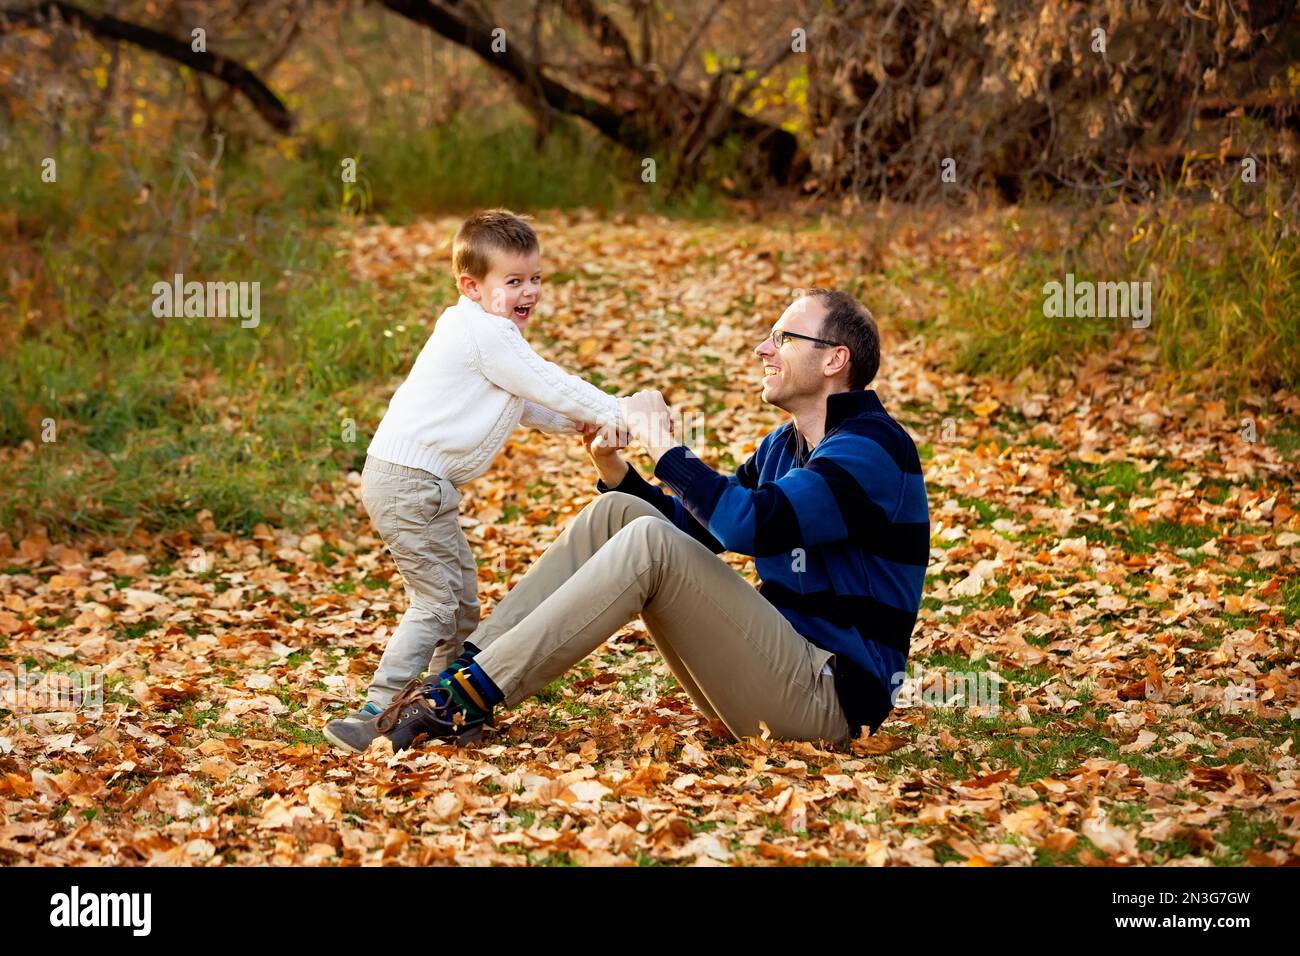 Un père jouant avec son fils lors d'une sortie en famille dans un parc de la ville pendant la saison d'automne; St. Albert, Alberta, Canada Banque D'Images